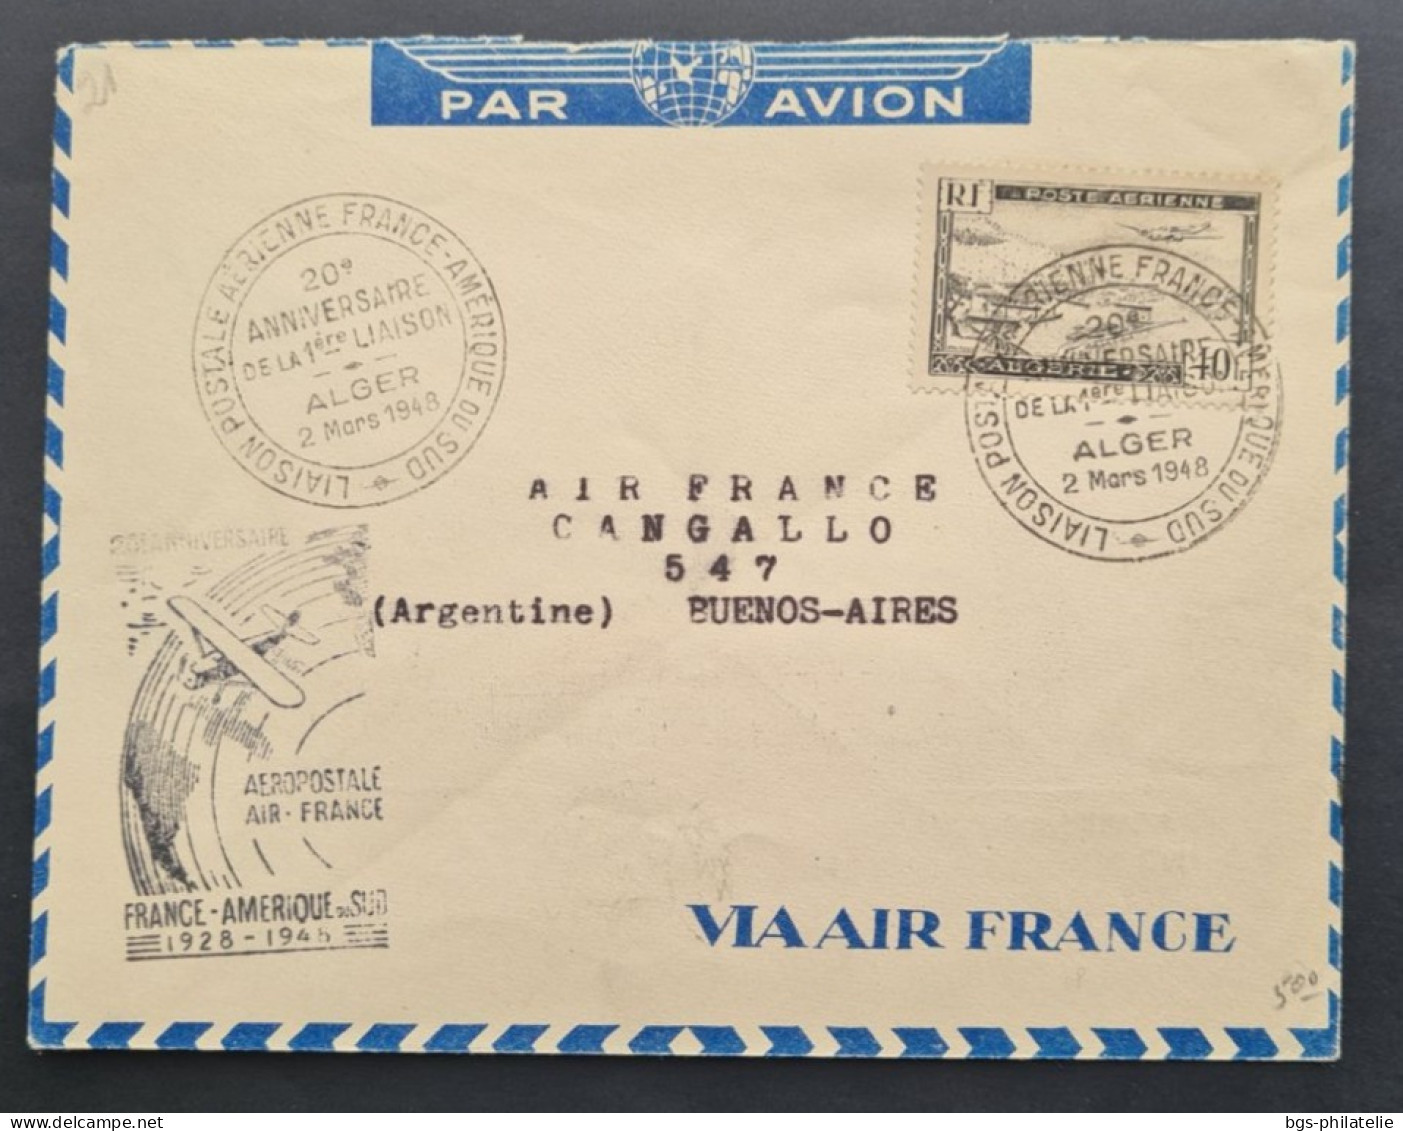 ALGÉRIE,  Timbre N ° PA 6 Sur Lettre Avec Griffe 20ème Anniversaire Aéropostale FRANCE- AMÉRIQUE  2Mars 1948. - Covers & Documents